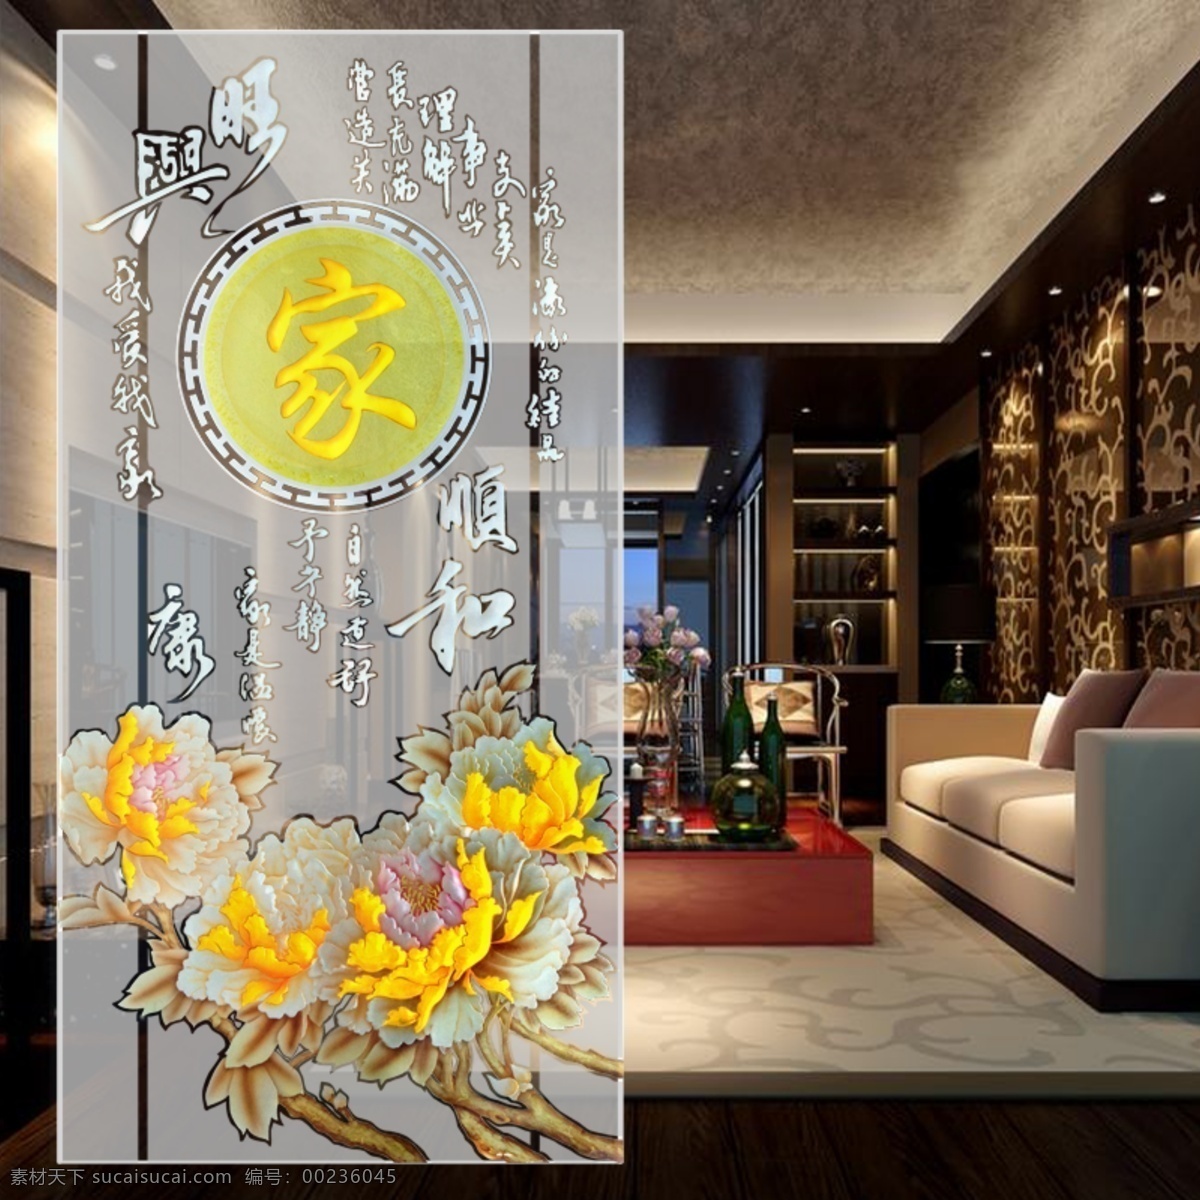 家 和顺 艺术 屏风 玻璃 艺术玻璃 屏风艺术玻璃 艺术玻璃图册 工艺玻璃设计 牡丹花装饰画